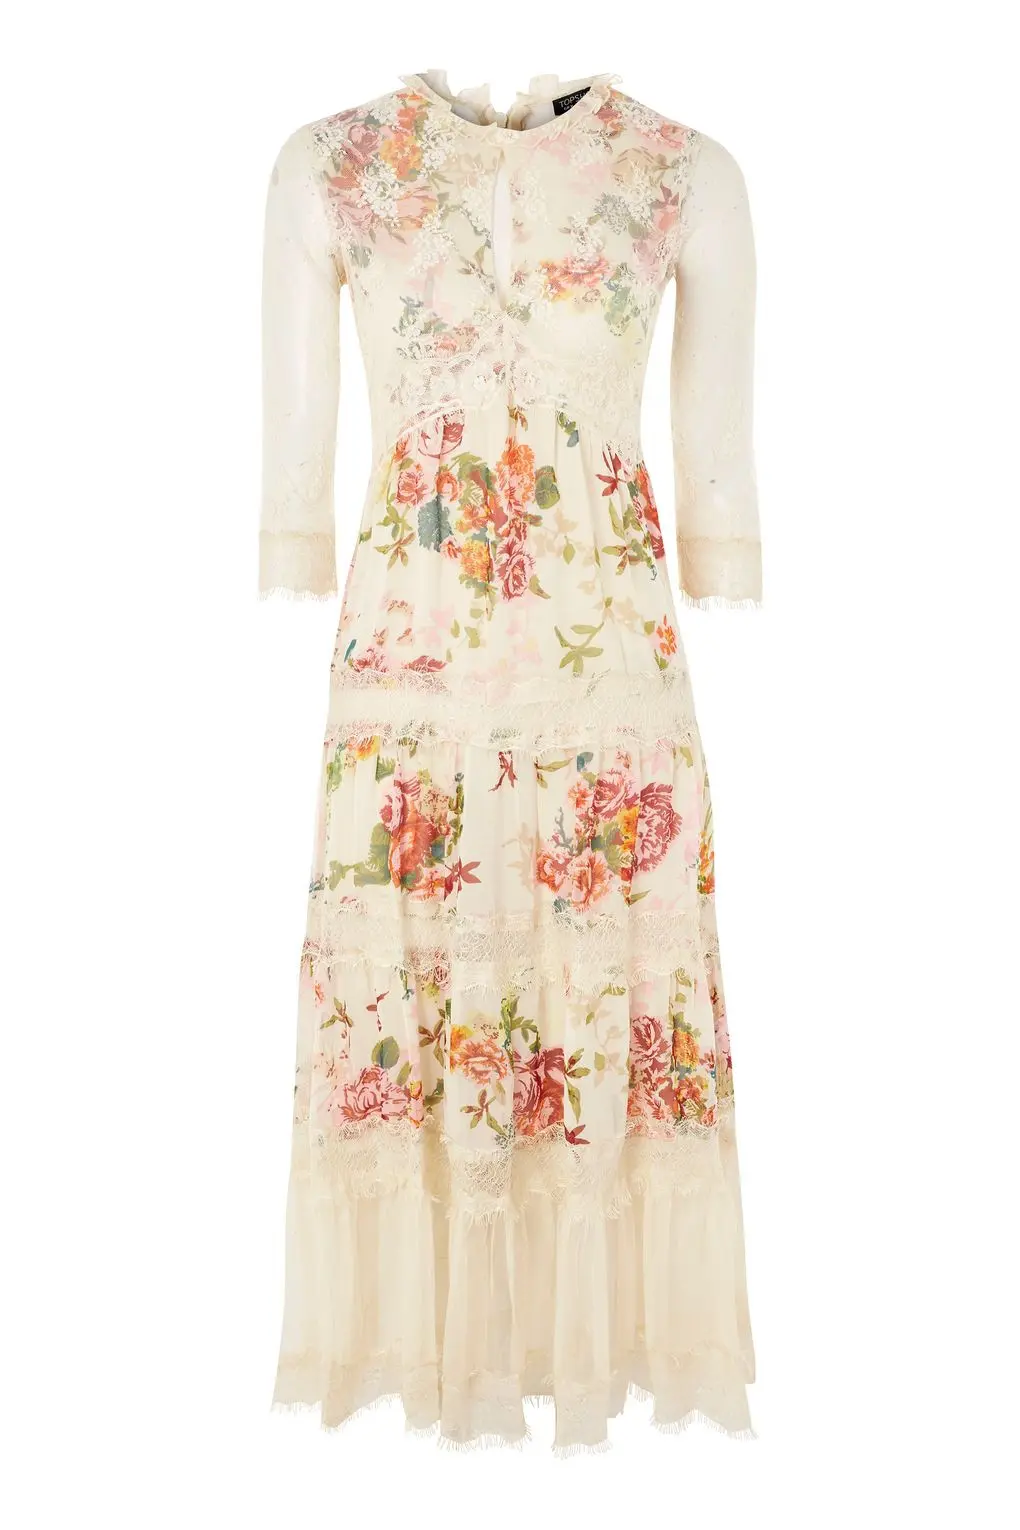 Lace Tier Floral Midi Dress. (topshop.com)